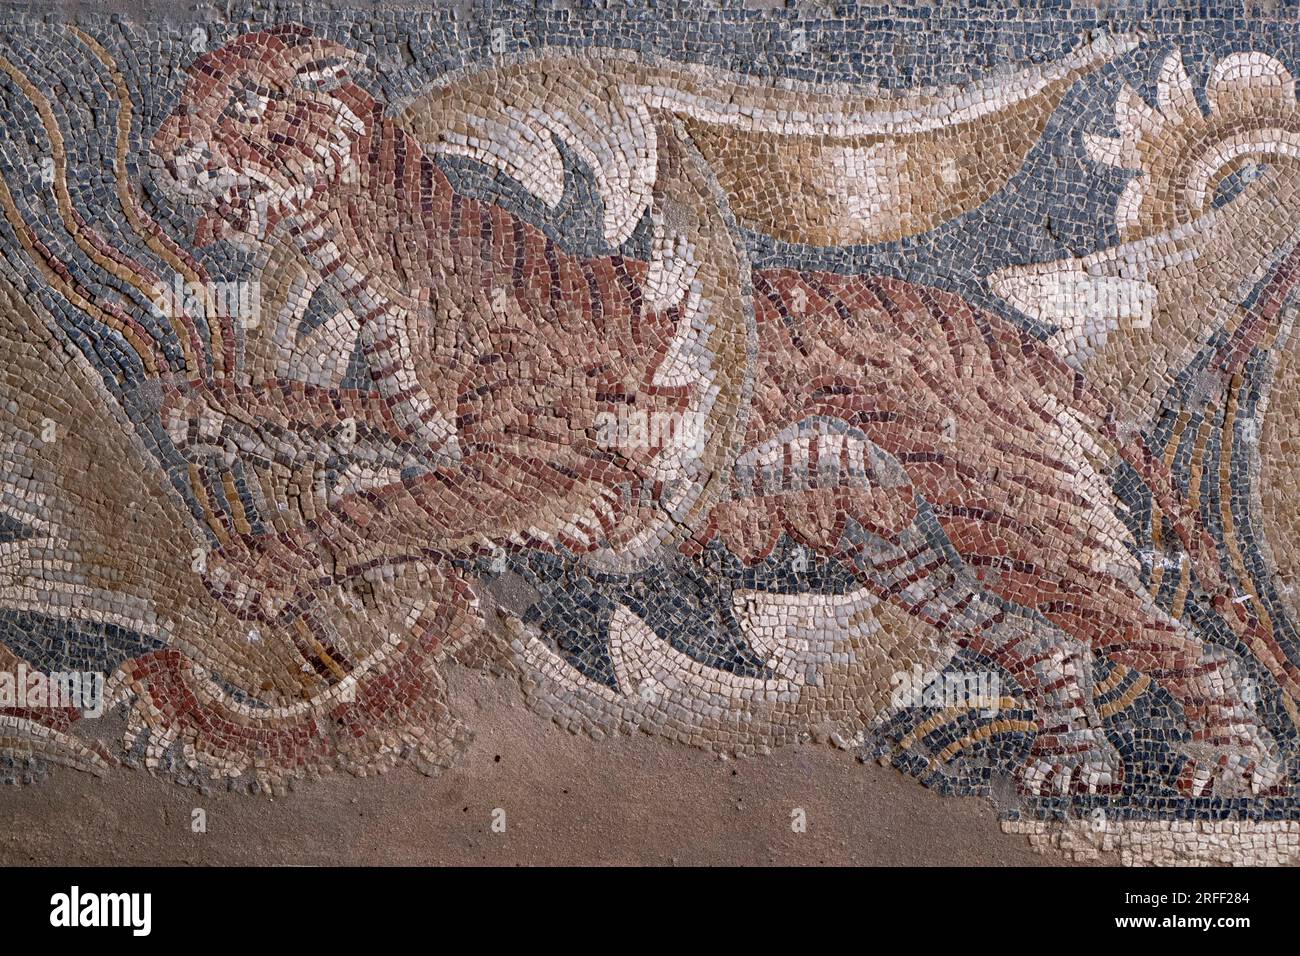 Italie, Sicile, région de Noto, Villa romaine de Tellaro du 4e siècle (Villa romana del Tellaro), mosaïque de tigres Banque D'Images